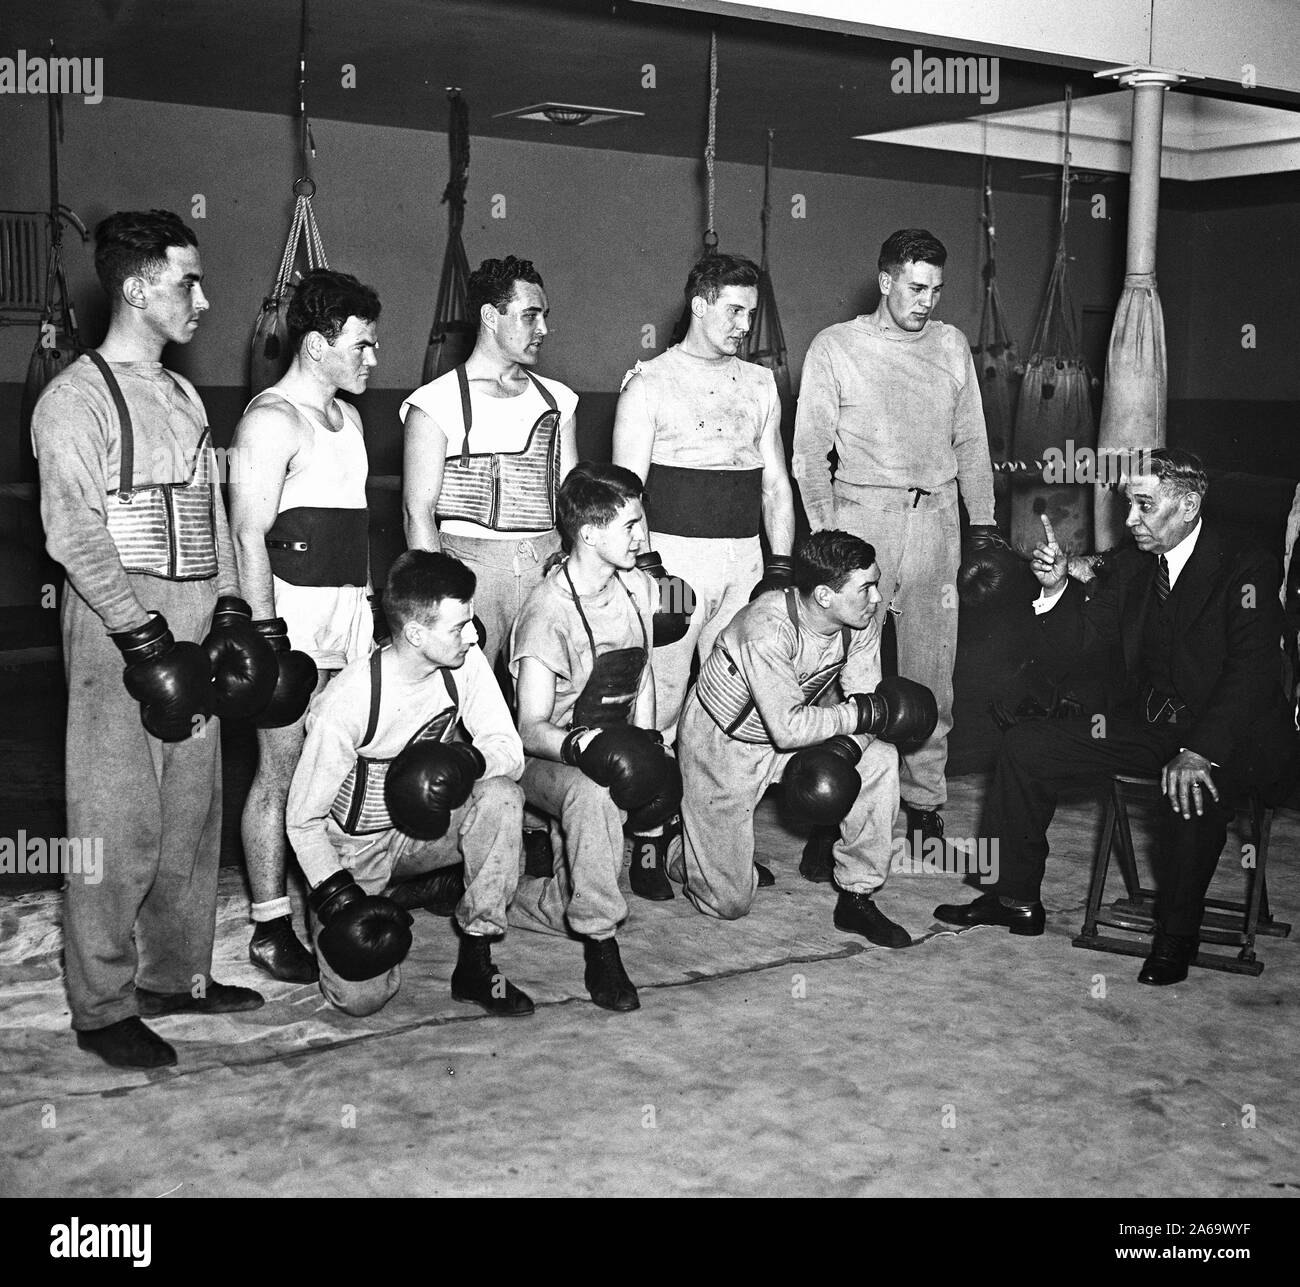 Un homme parle à un groupe de boxeurs dans un club de boxe, peut-être un entraîneur ca. 1936 Banque D'Images